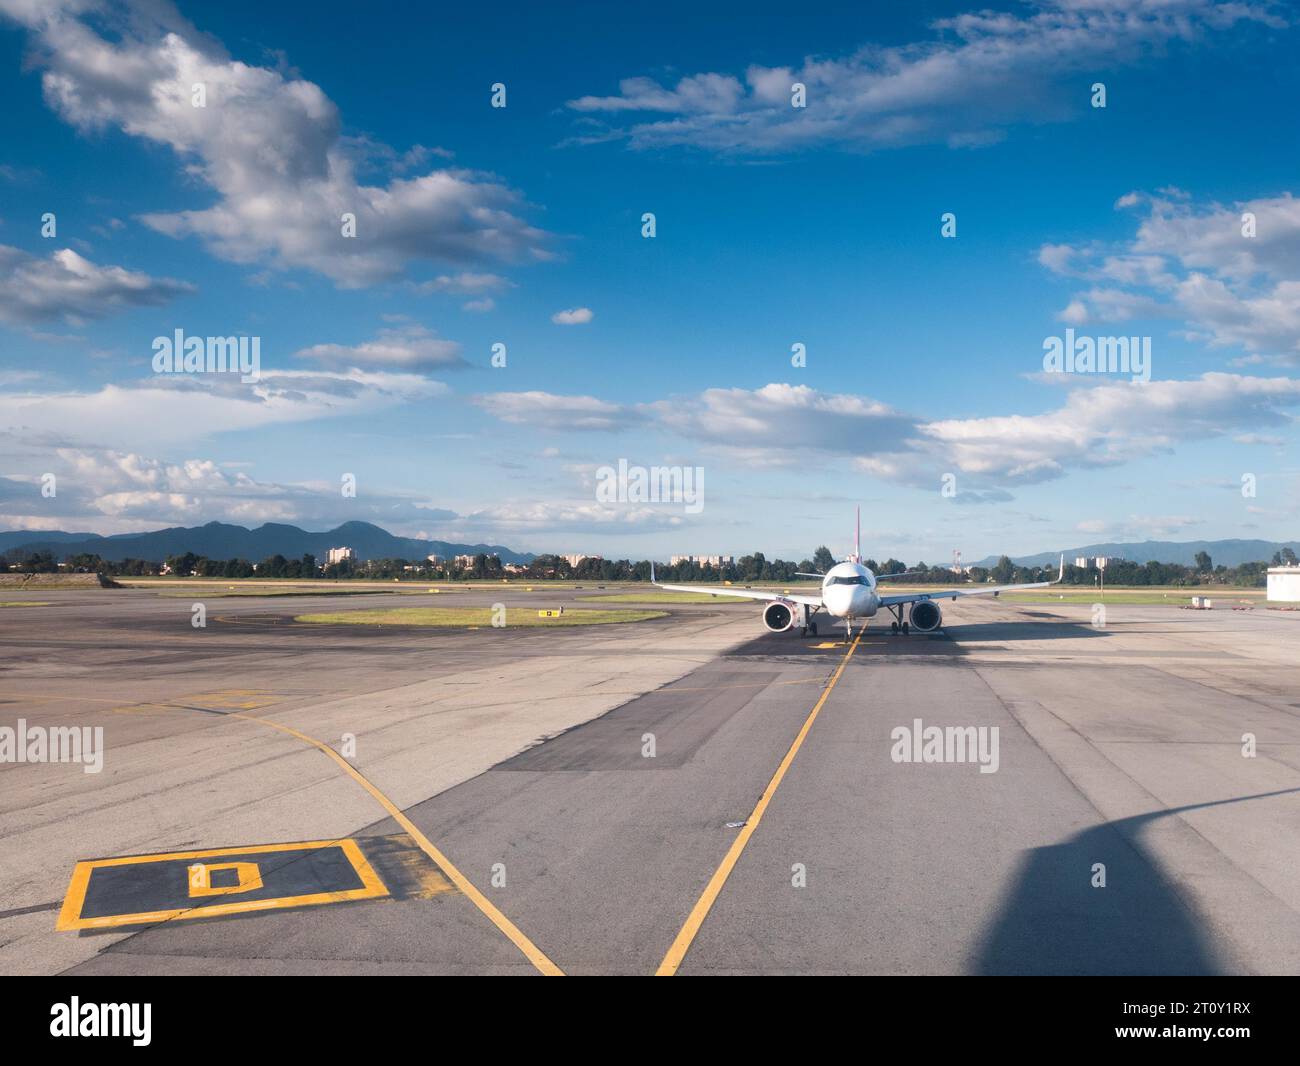 Vorderansicht eines Passagierflugzeugs, das bereit ist, auf einer Start- und Landebahn des Flughafens zu starten Stockfoto